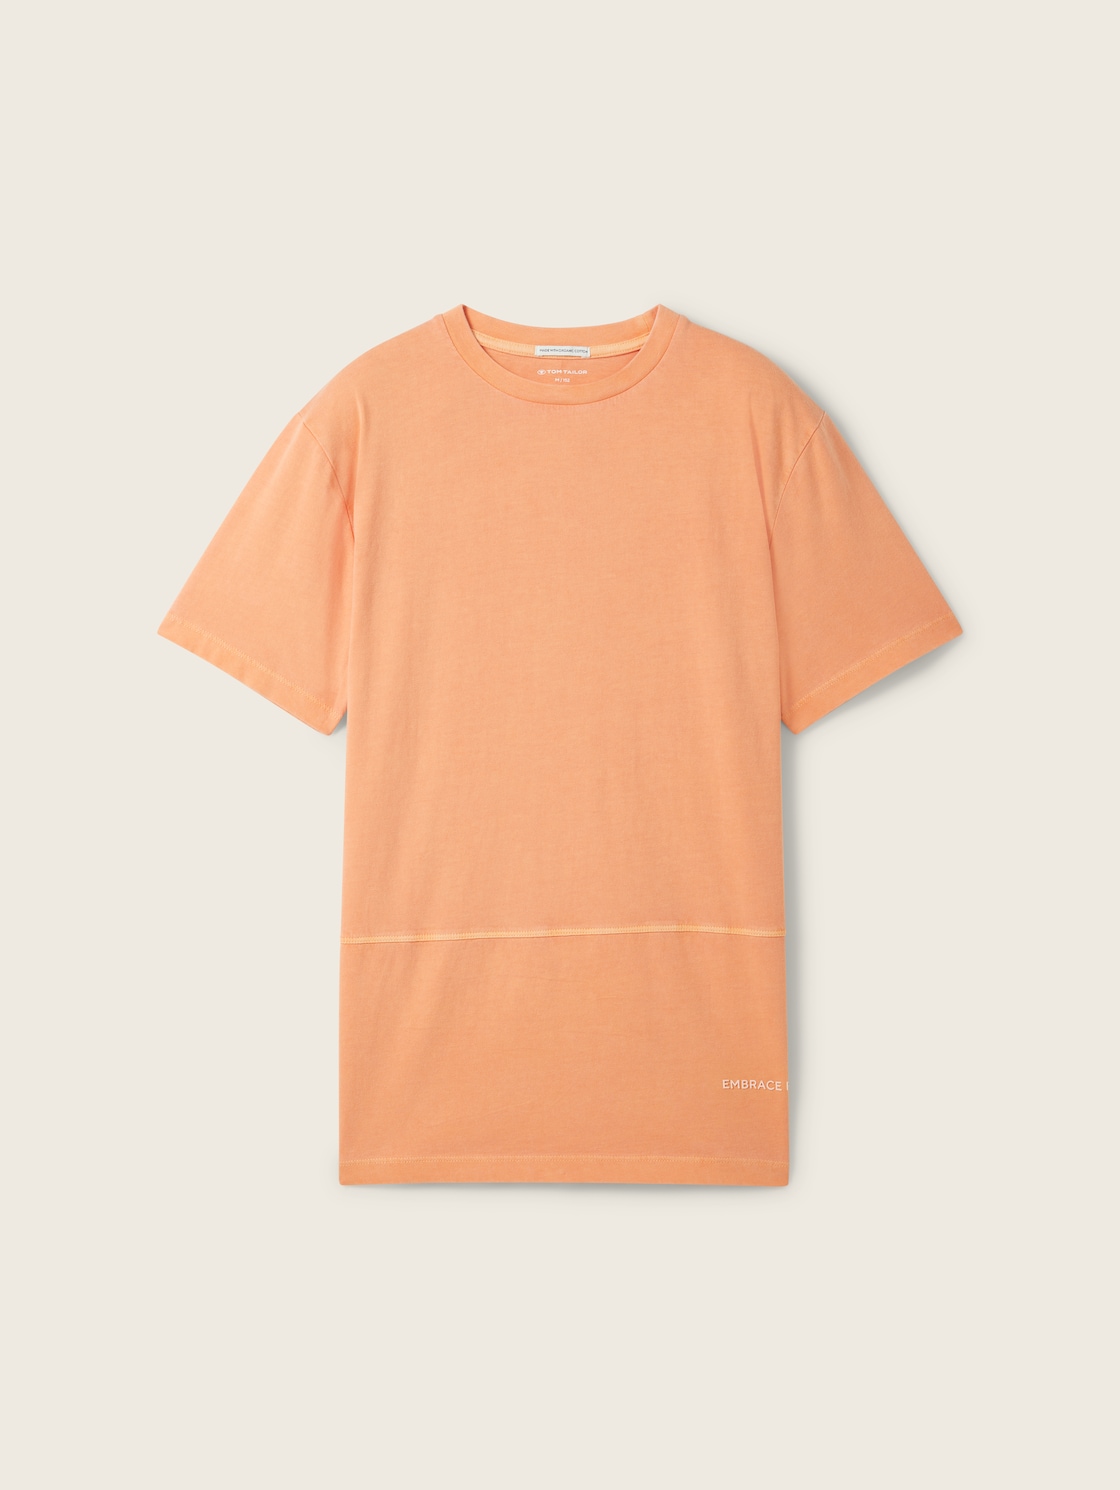 TOM TAILOR Jungen T-Shirt mit Bio-Baumwolle, orange, Uni, Gr. 176 von Tom Tailor